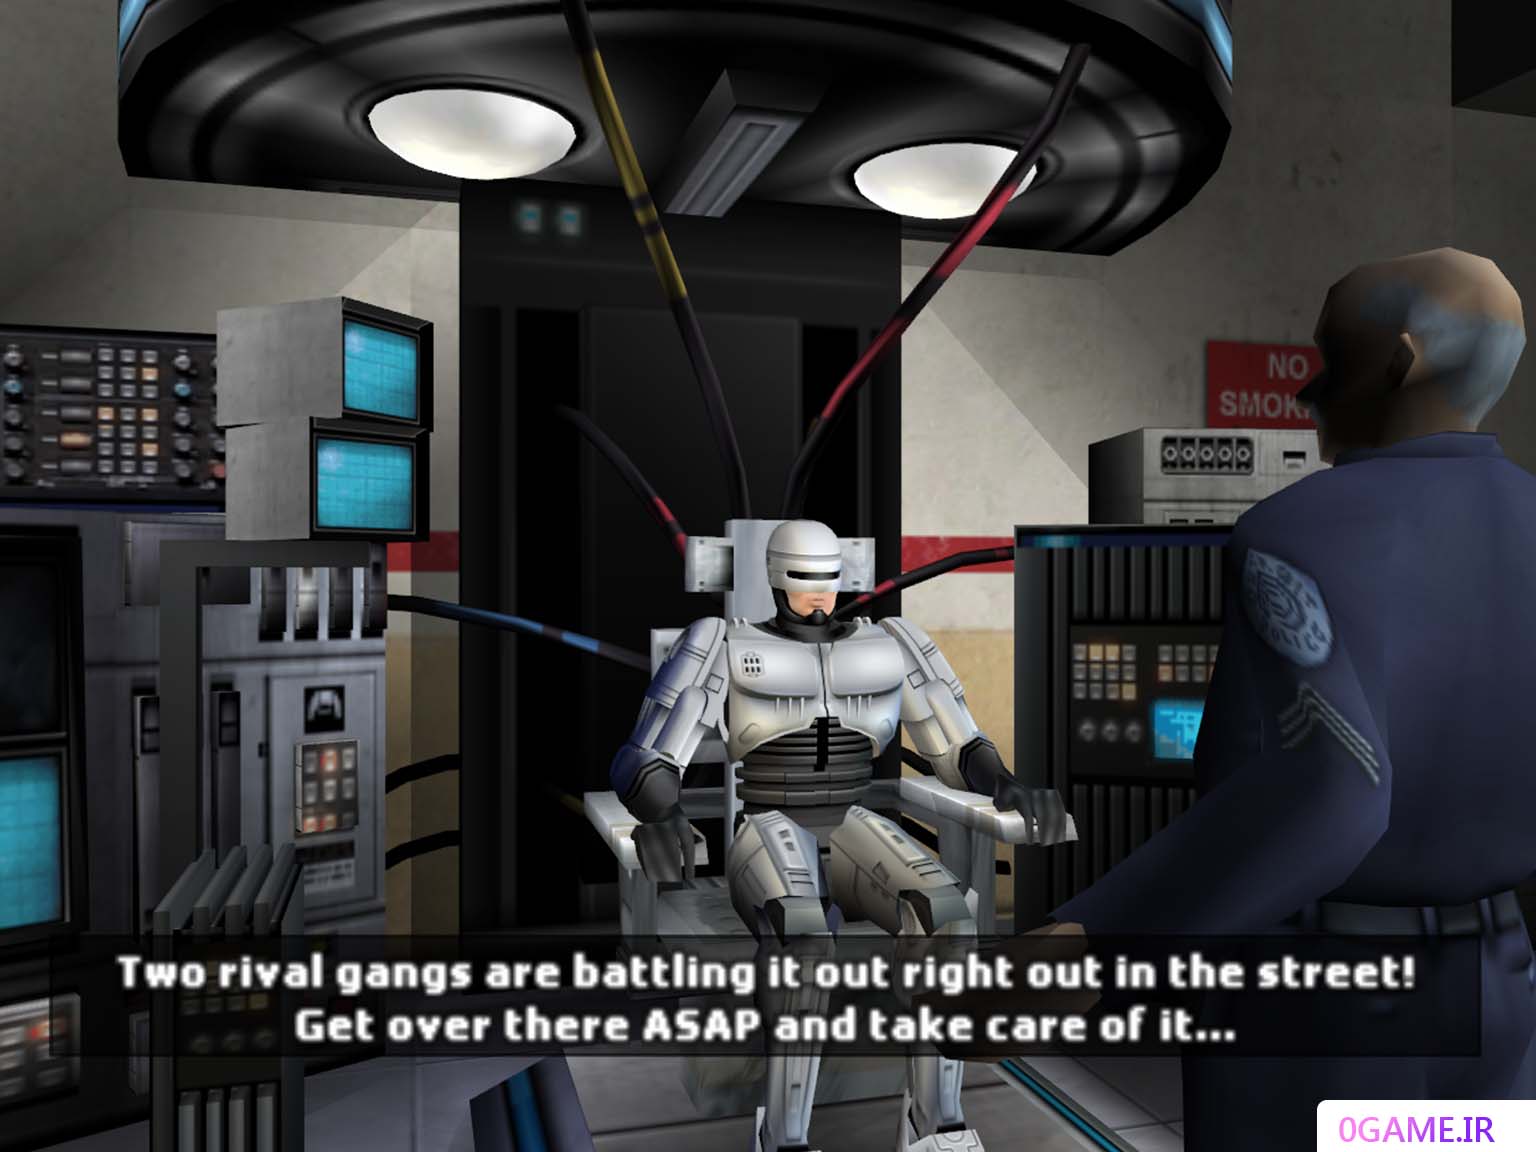 دانلود بازی پلیس آهنی (RoboCop) نسخه کامل برای کامپیوتر